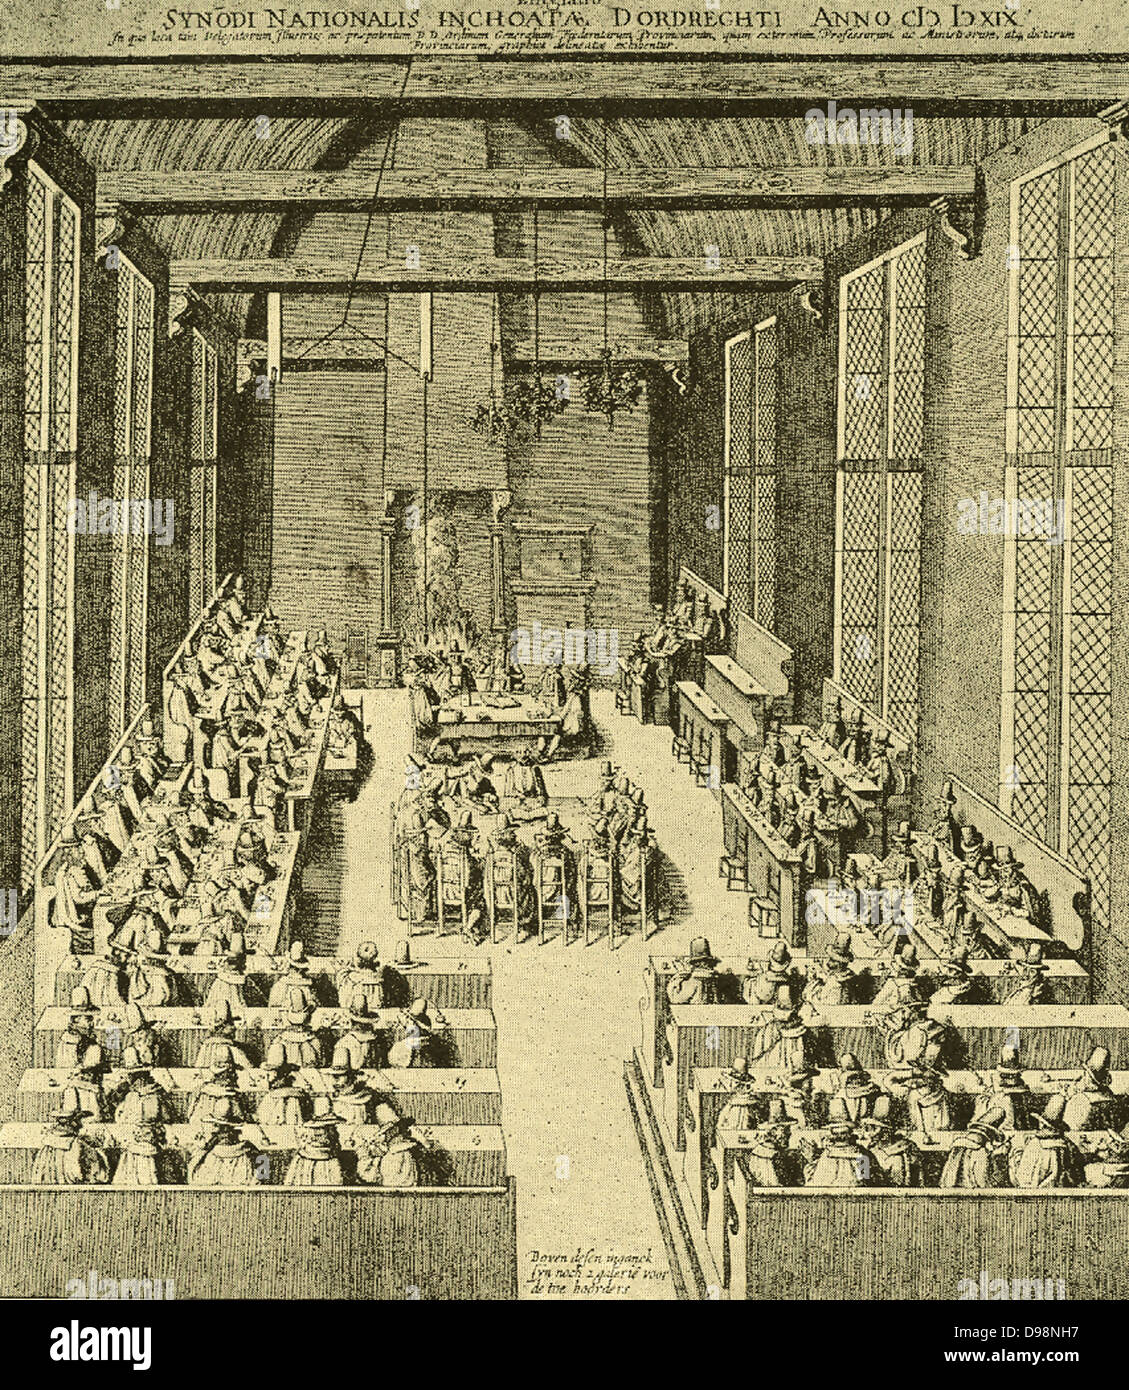 Camera nell'arciere Obiettivi a Dordrecht, dove il sinodo nazionale di novembre 1618 al maggio 1619 ha incontrato. A questa riunione hanno partecipato 37 ministri e 19 anziani, delegate dalle chiese olandese. Foto Stock